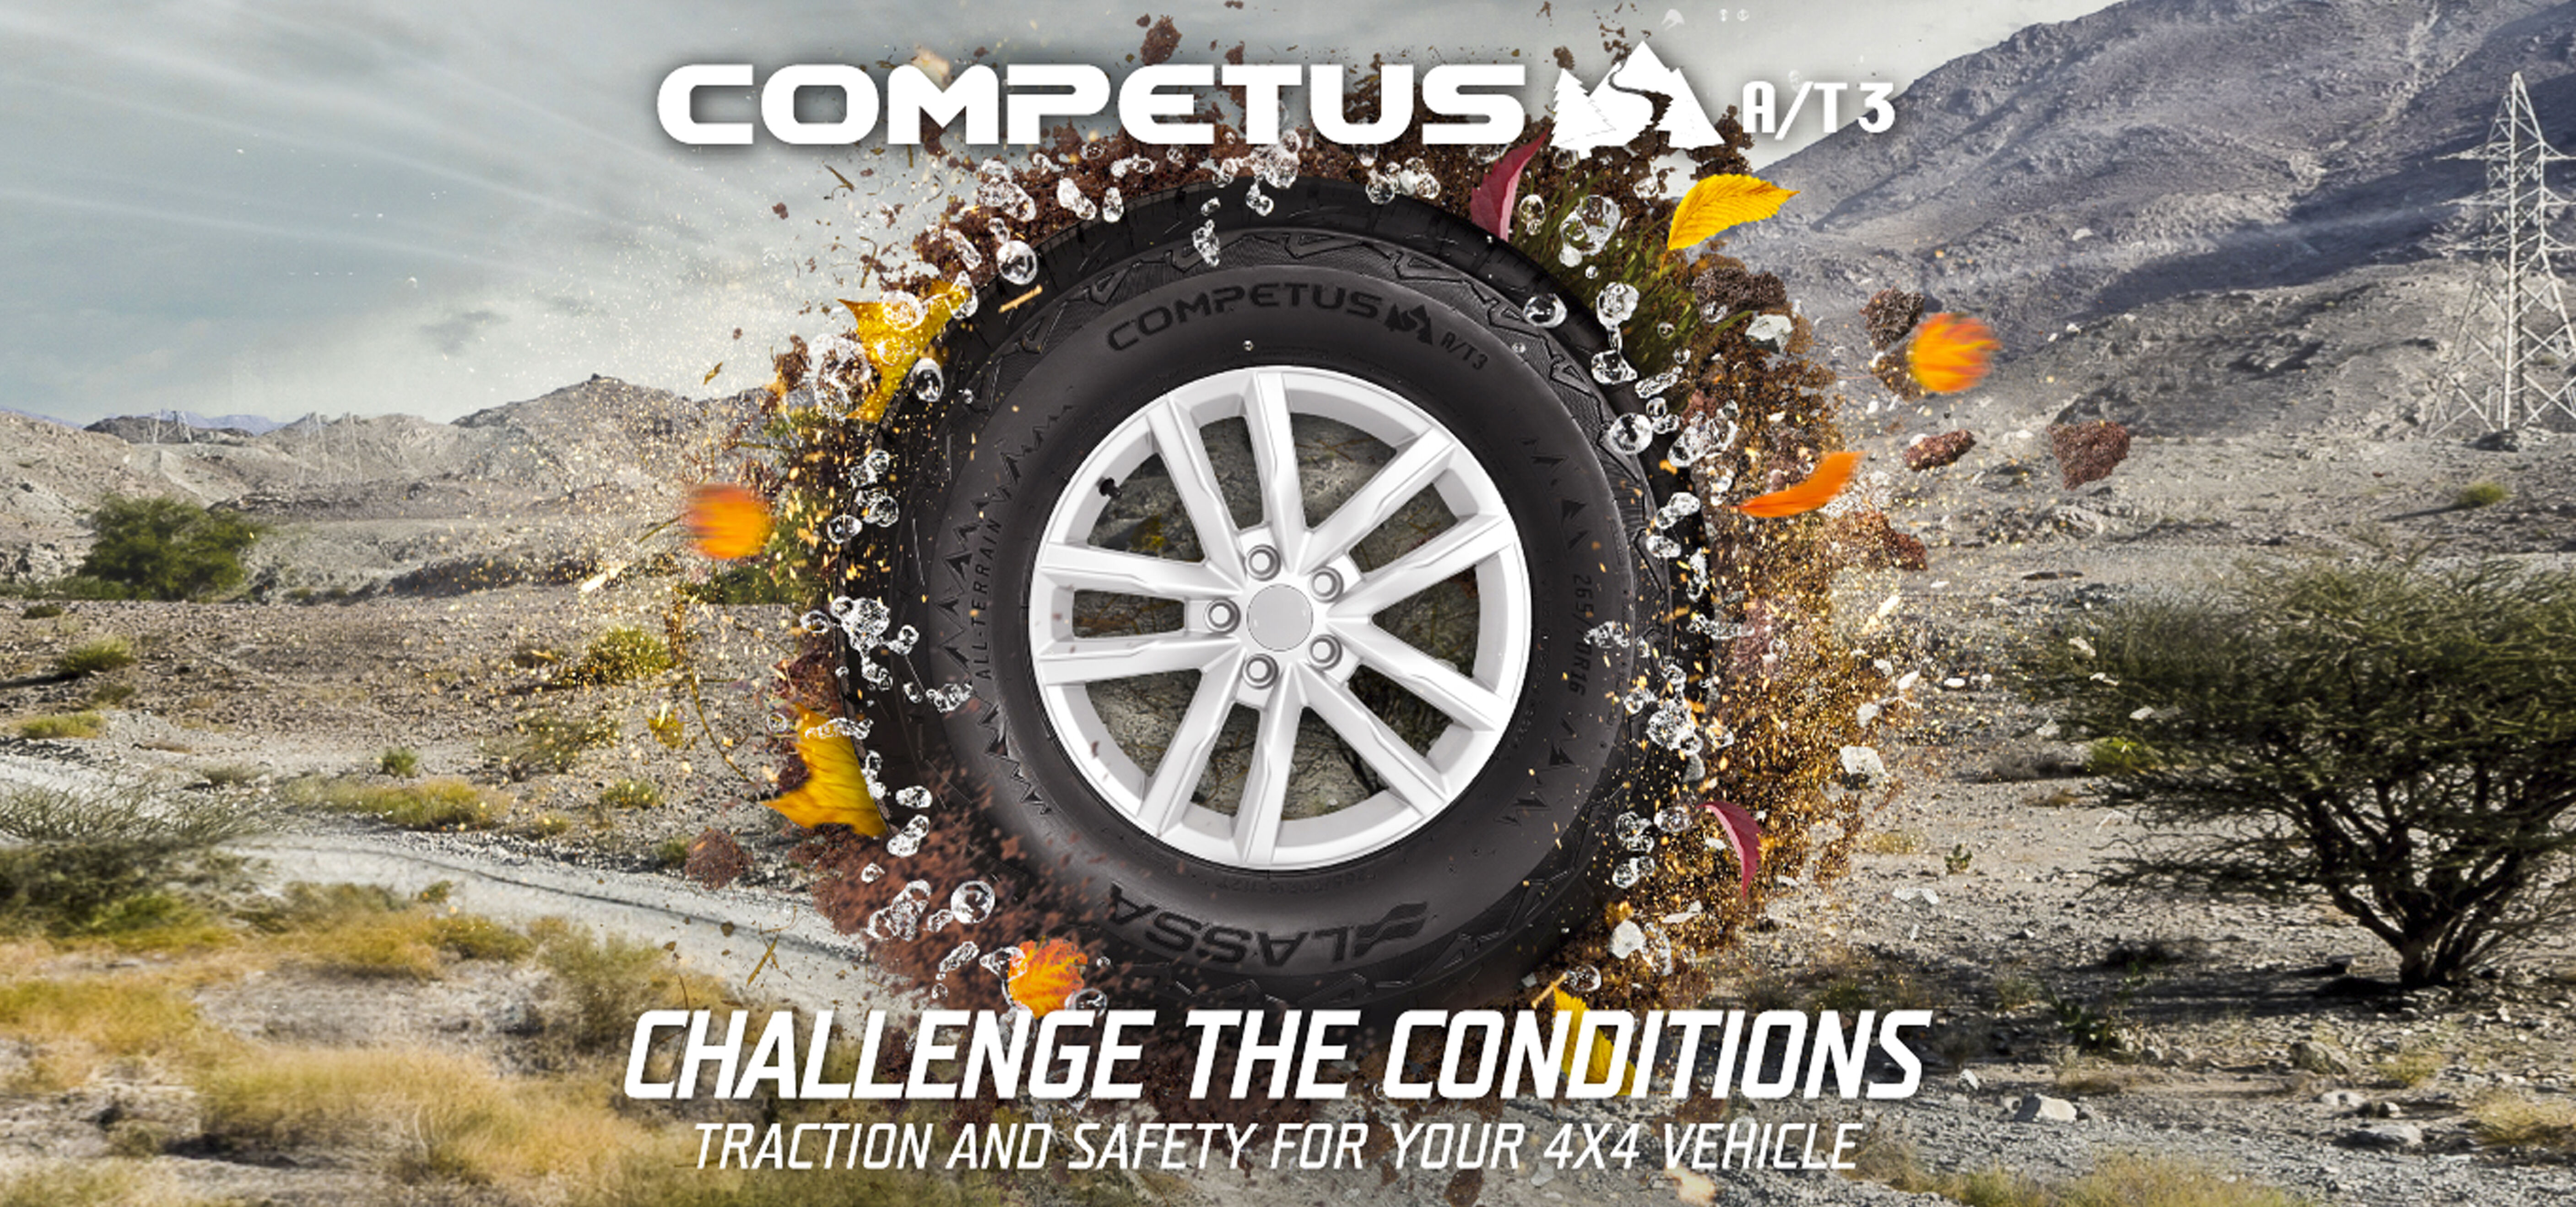 Lassa prezintă o nouă anvelopă  all season SUV – Lassa Competus A/T3